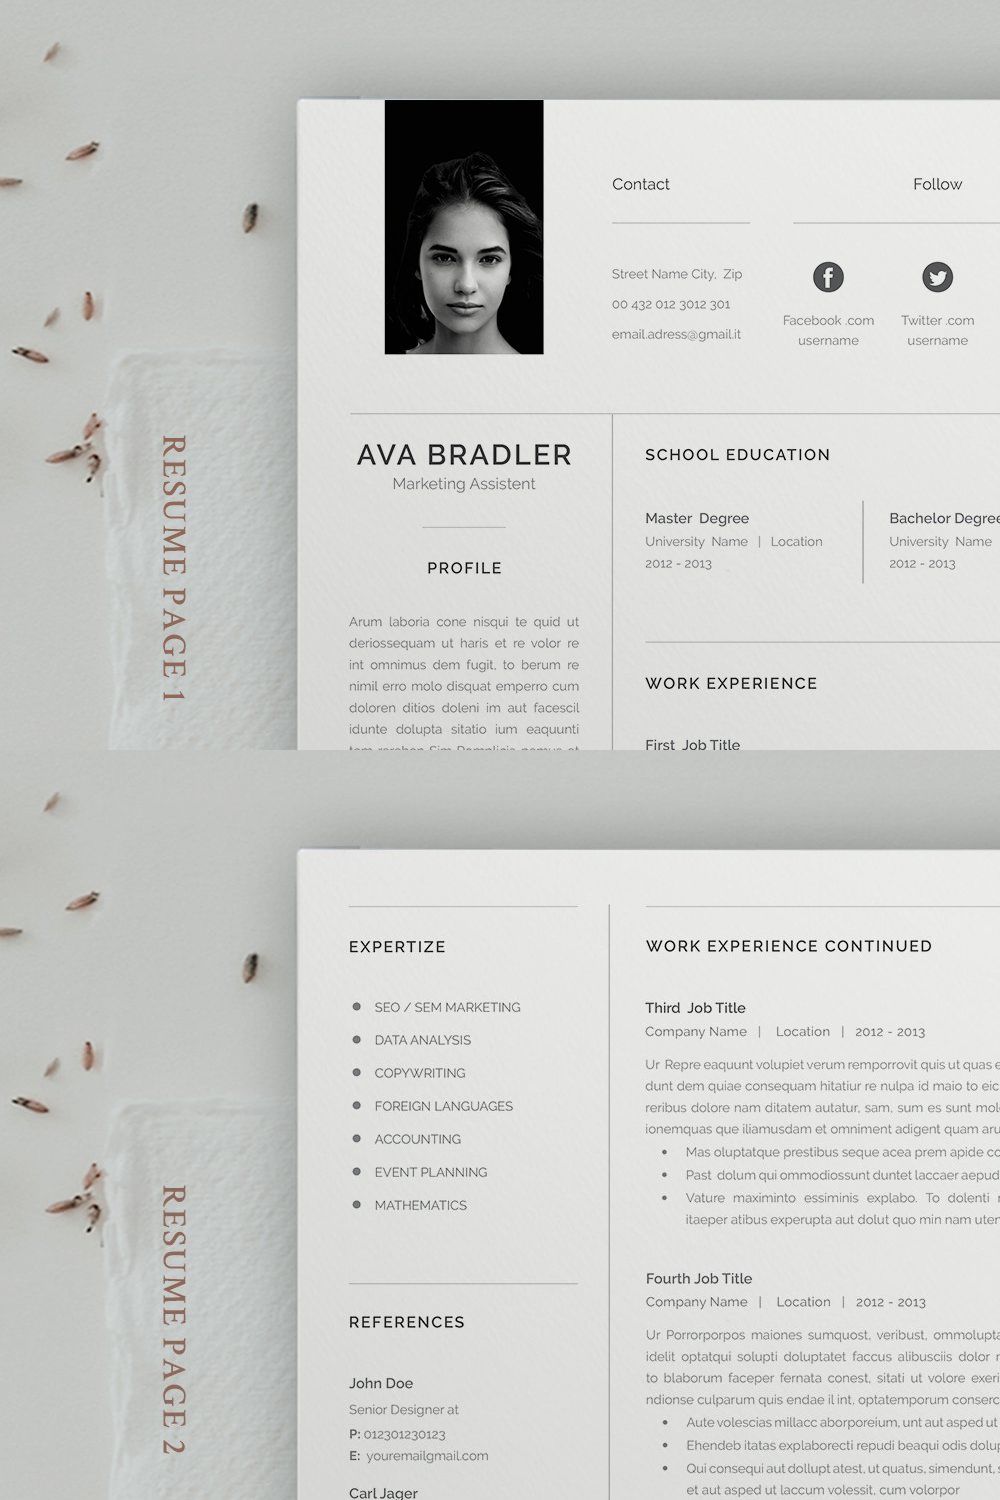 Resume / Cv / Ava pinterest preview image.